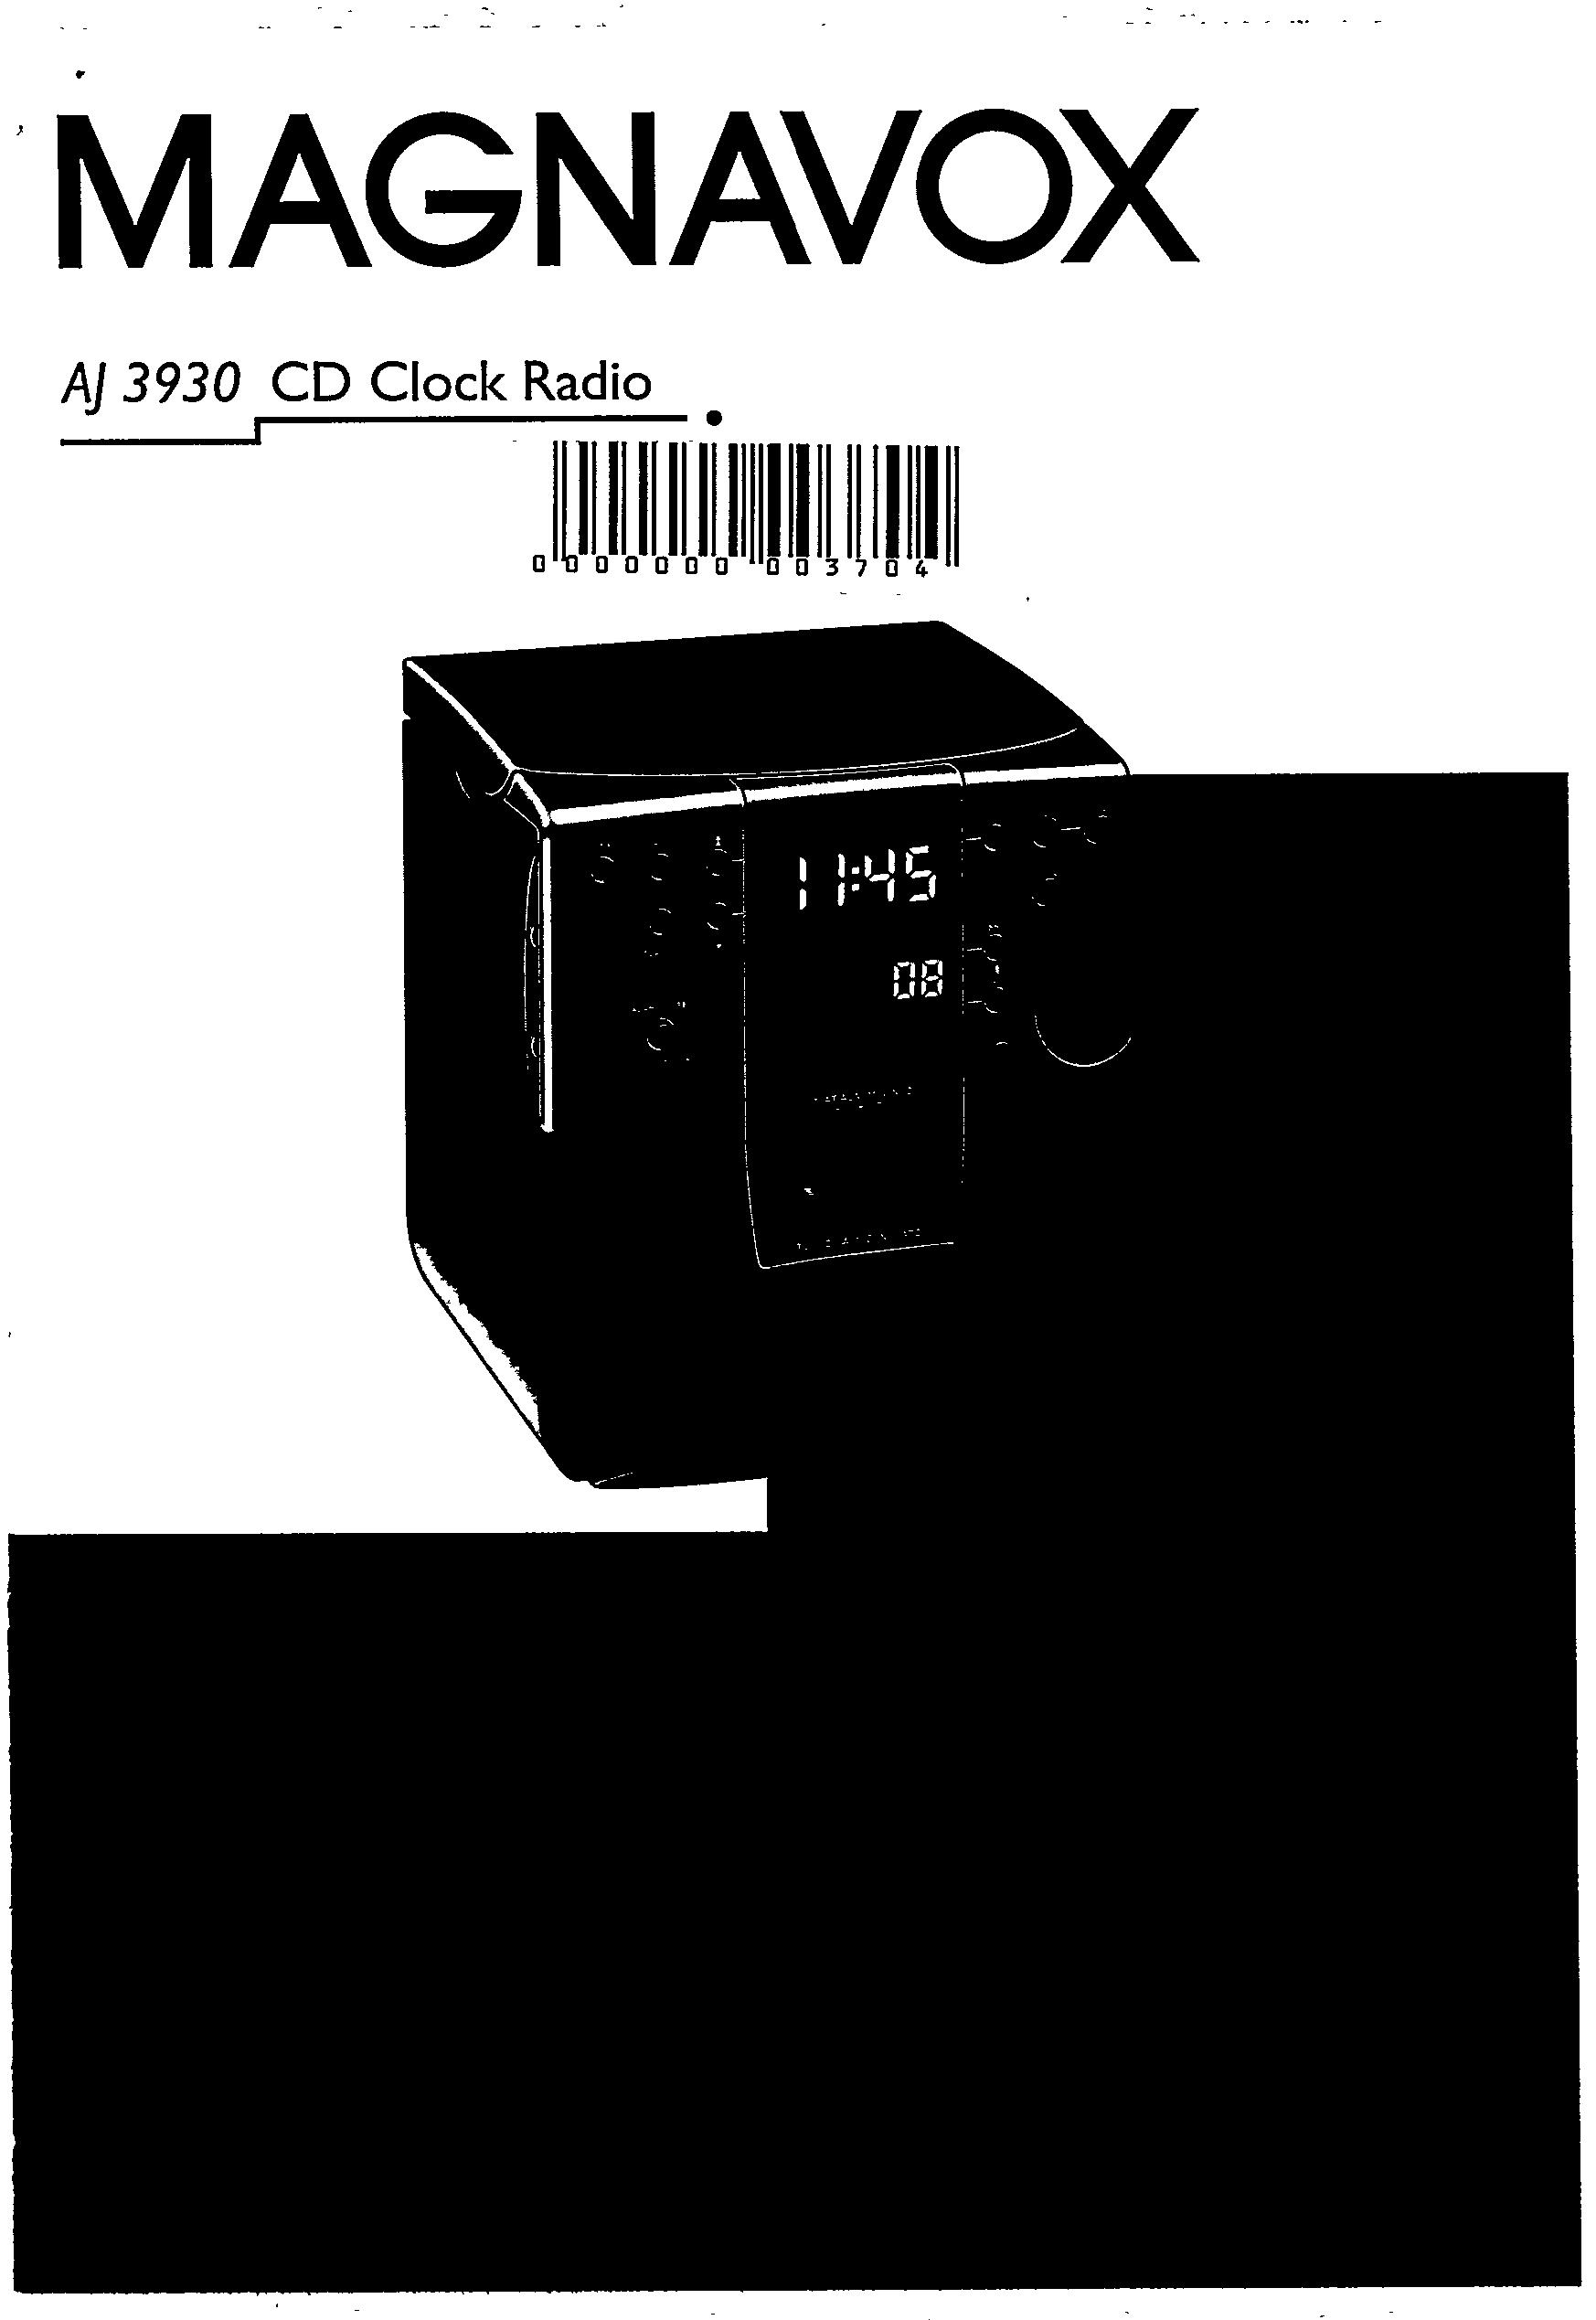 Magnavox AJ3930 Clock Radio User Manual